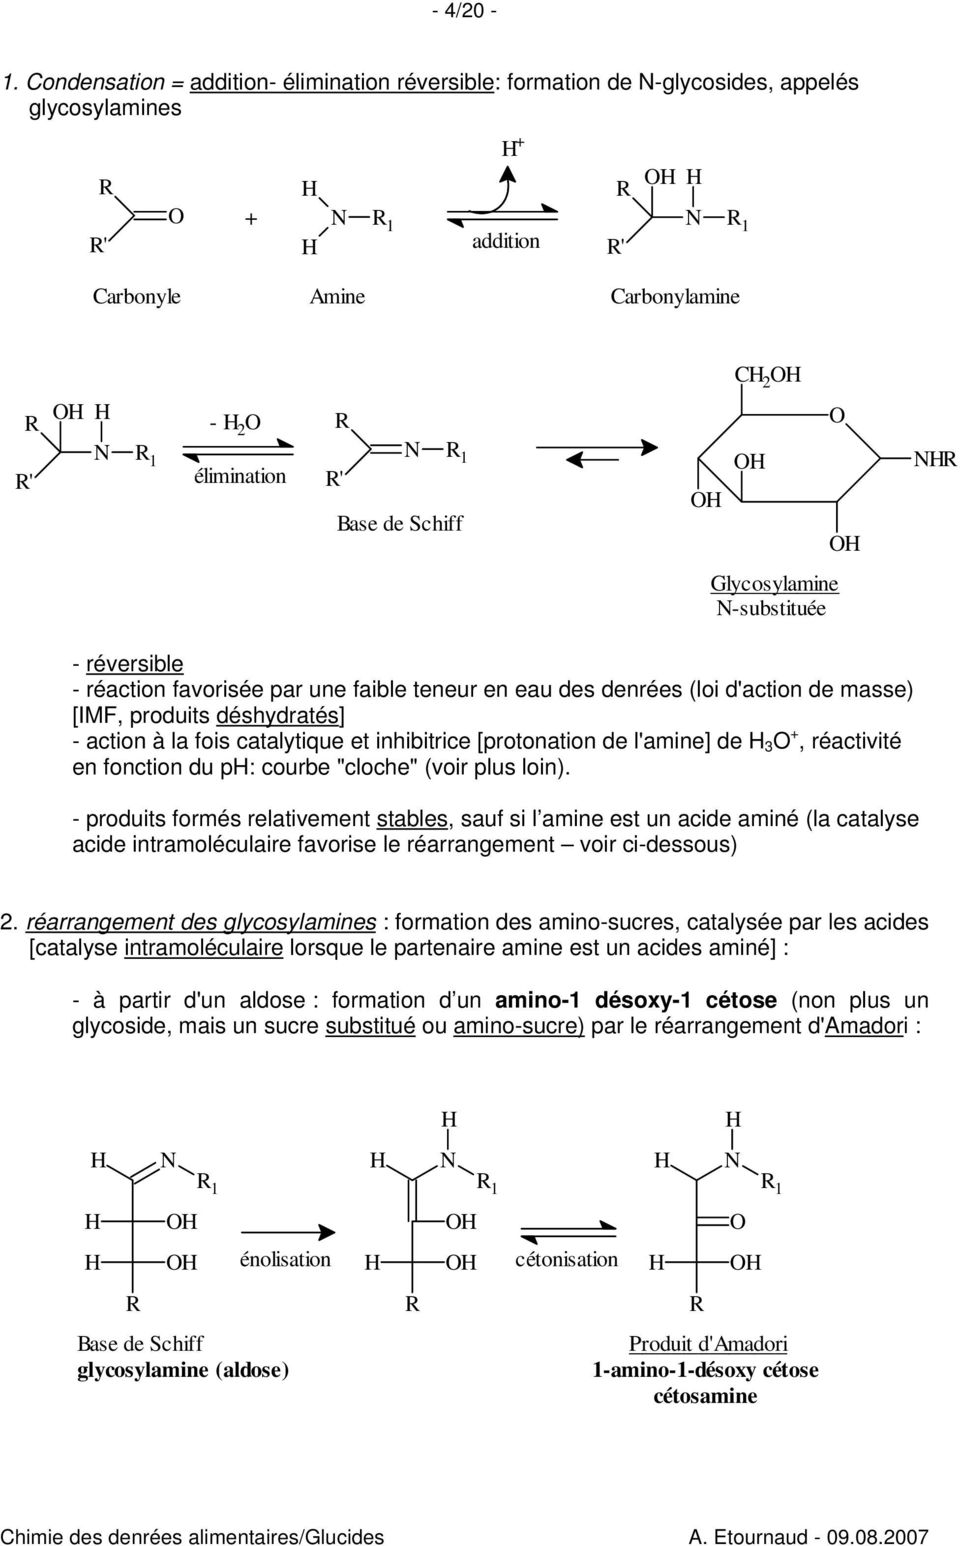 Glycosylamine -substituée - réversible - réaction favorisée par une faible teneur en eau des denrées (loi d'action de masse) [IMF, produits déshydratés] - action à la fois catalytique et inhibitrice